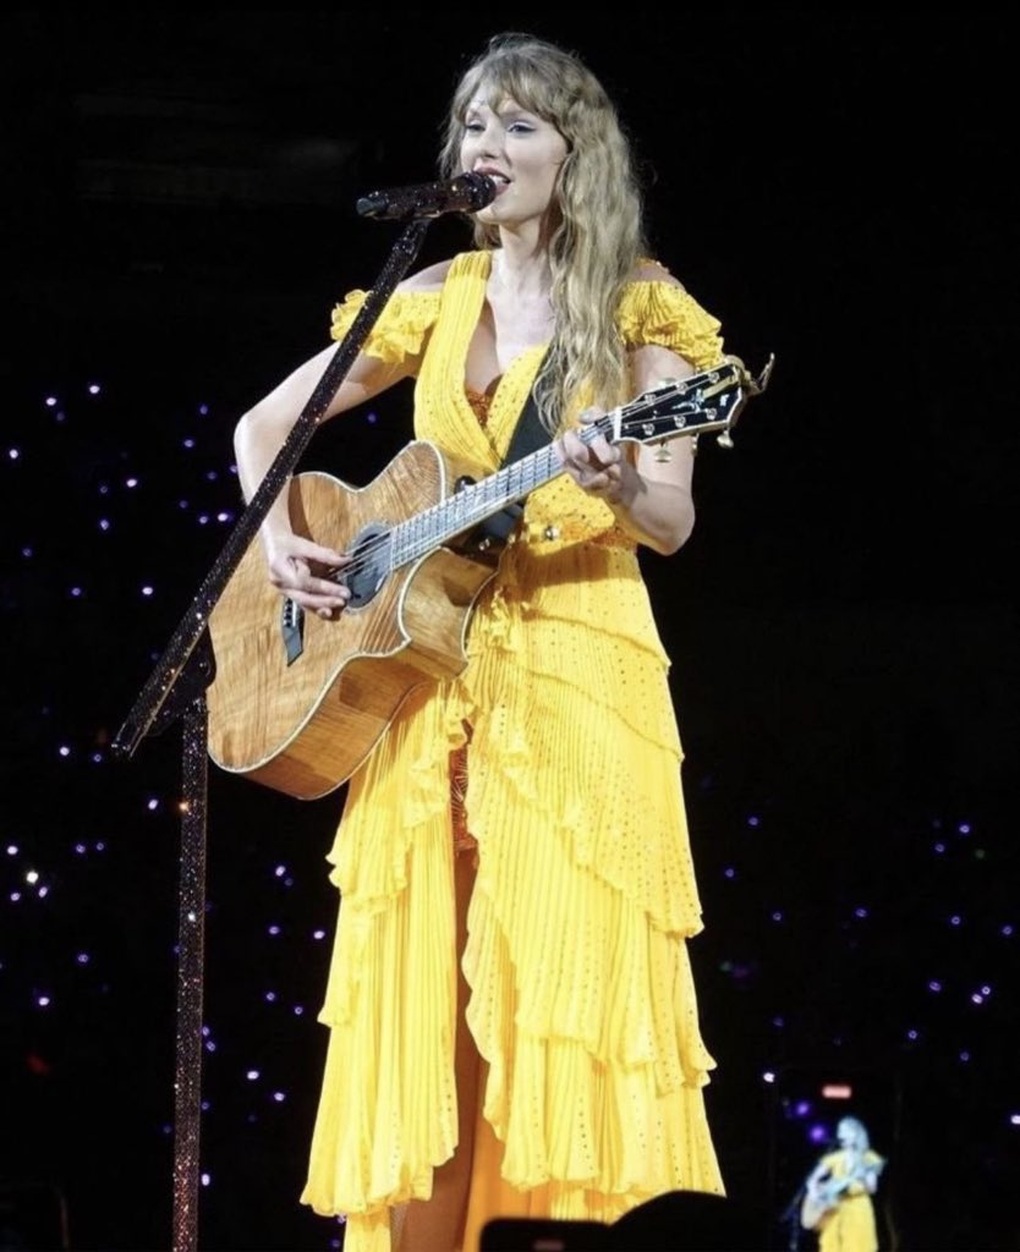 Biểu diễn ở Singapore, Taylor Swift chọn diện đồ của các nhà mốt danh tiếng - 7